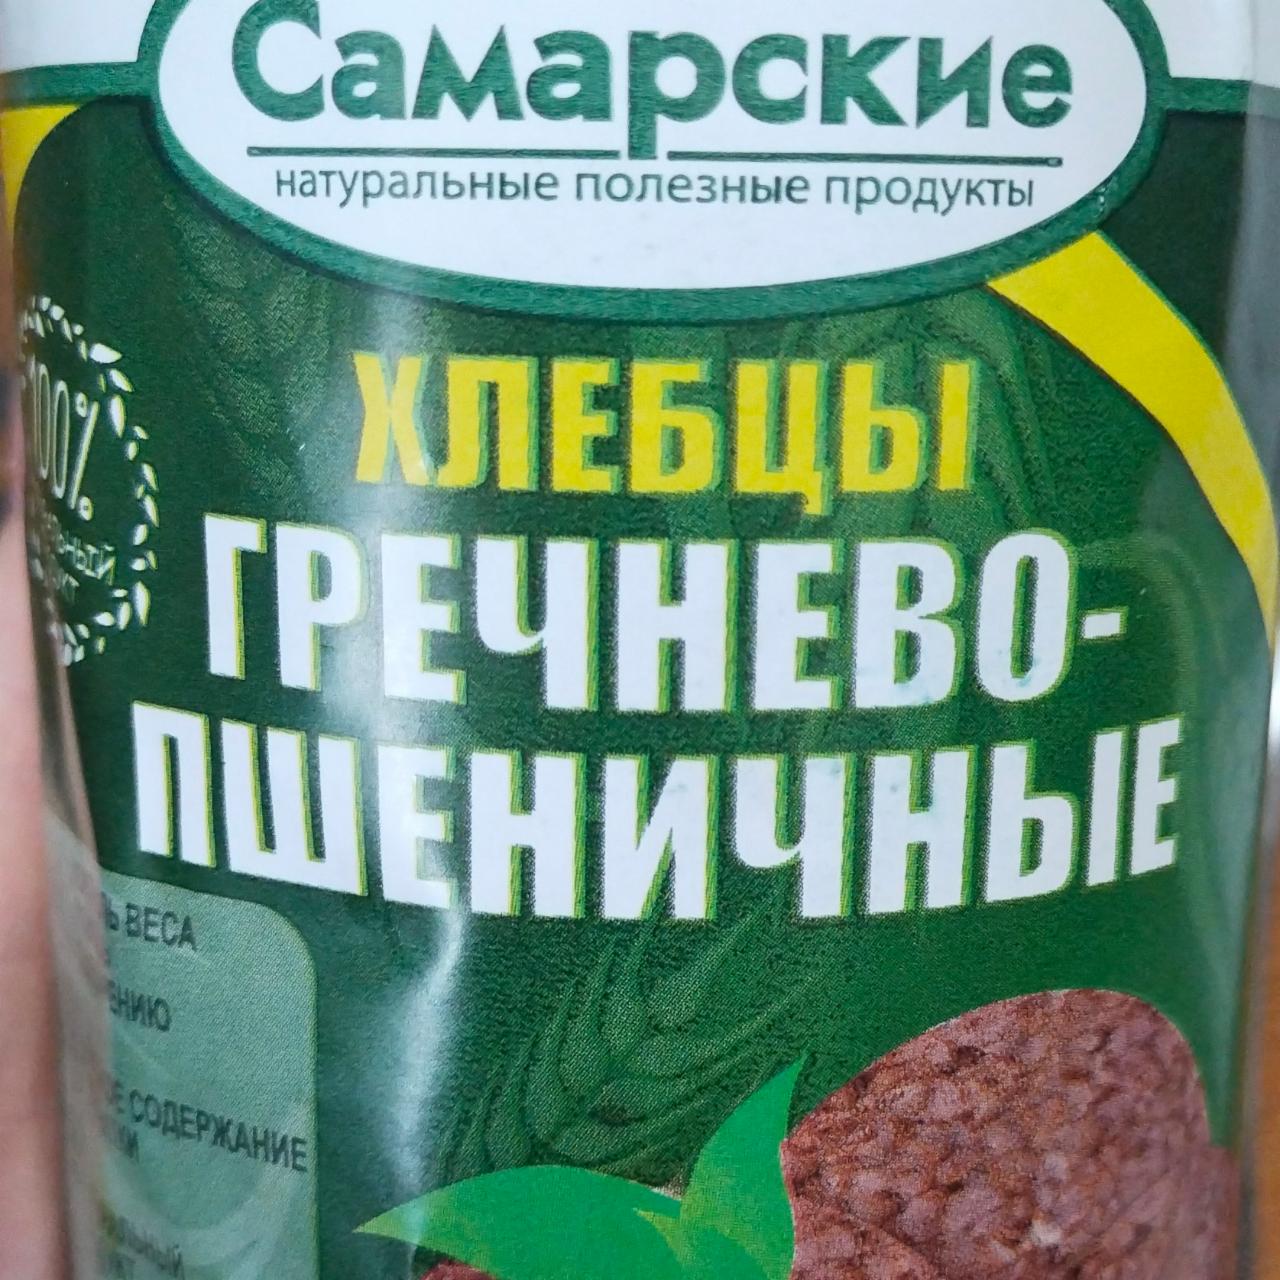 Фото - хлебцы гречнево-пшеничные Самарские натуральные полезные продукты